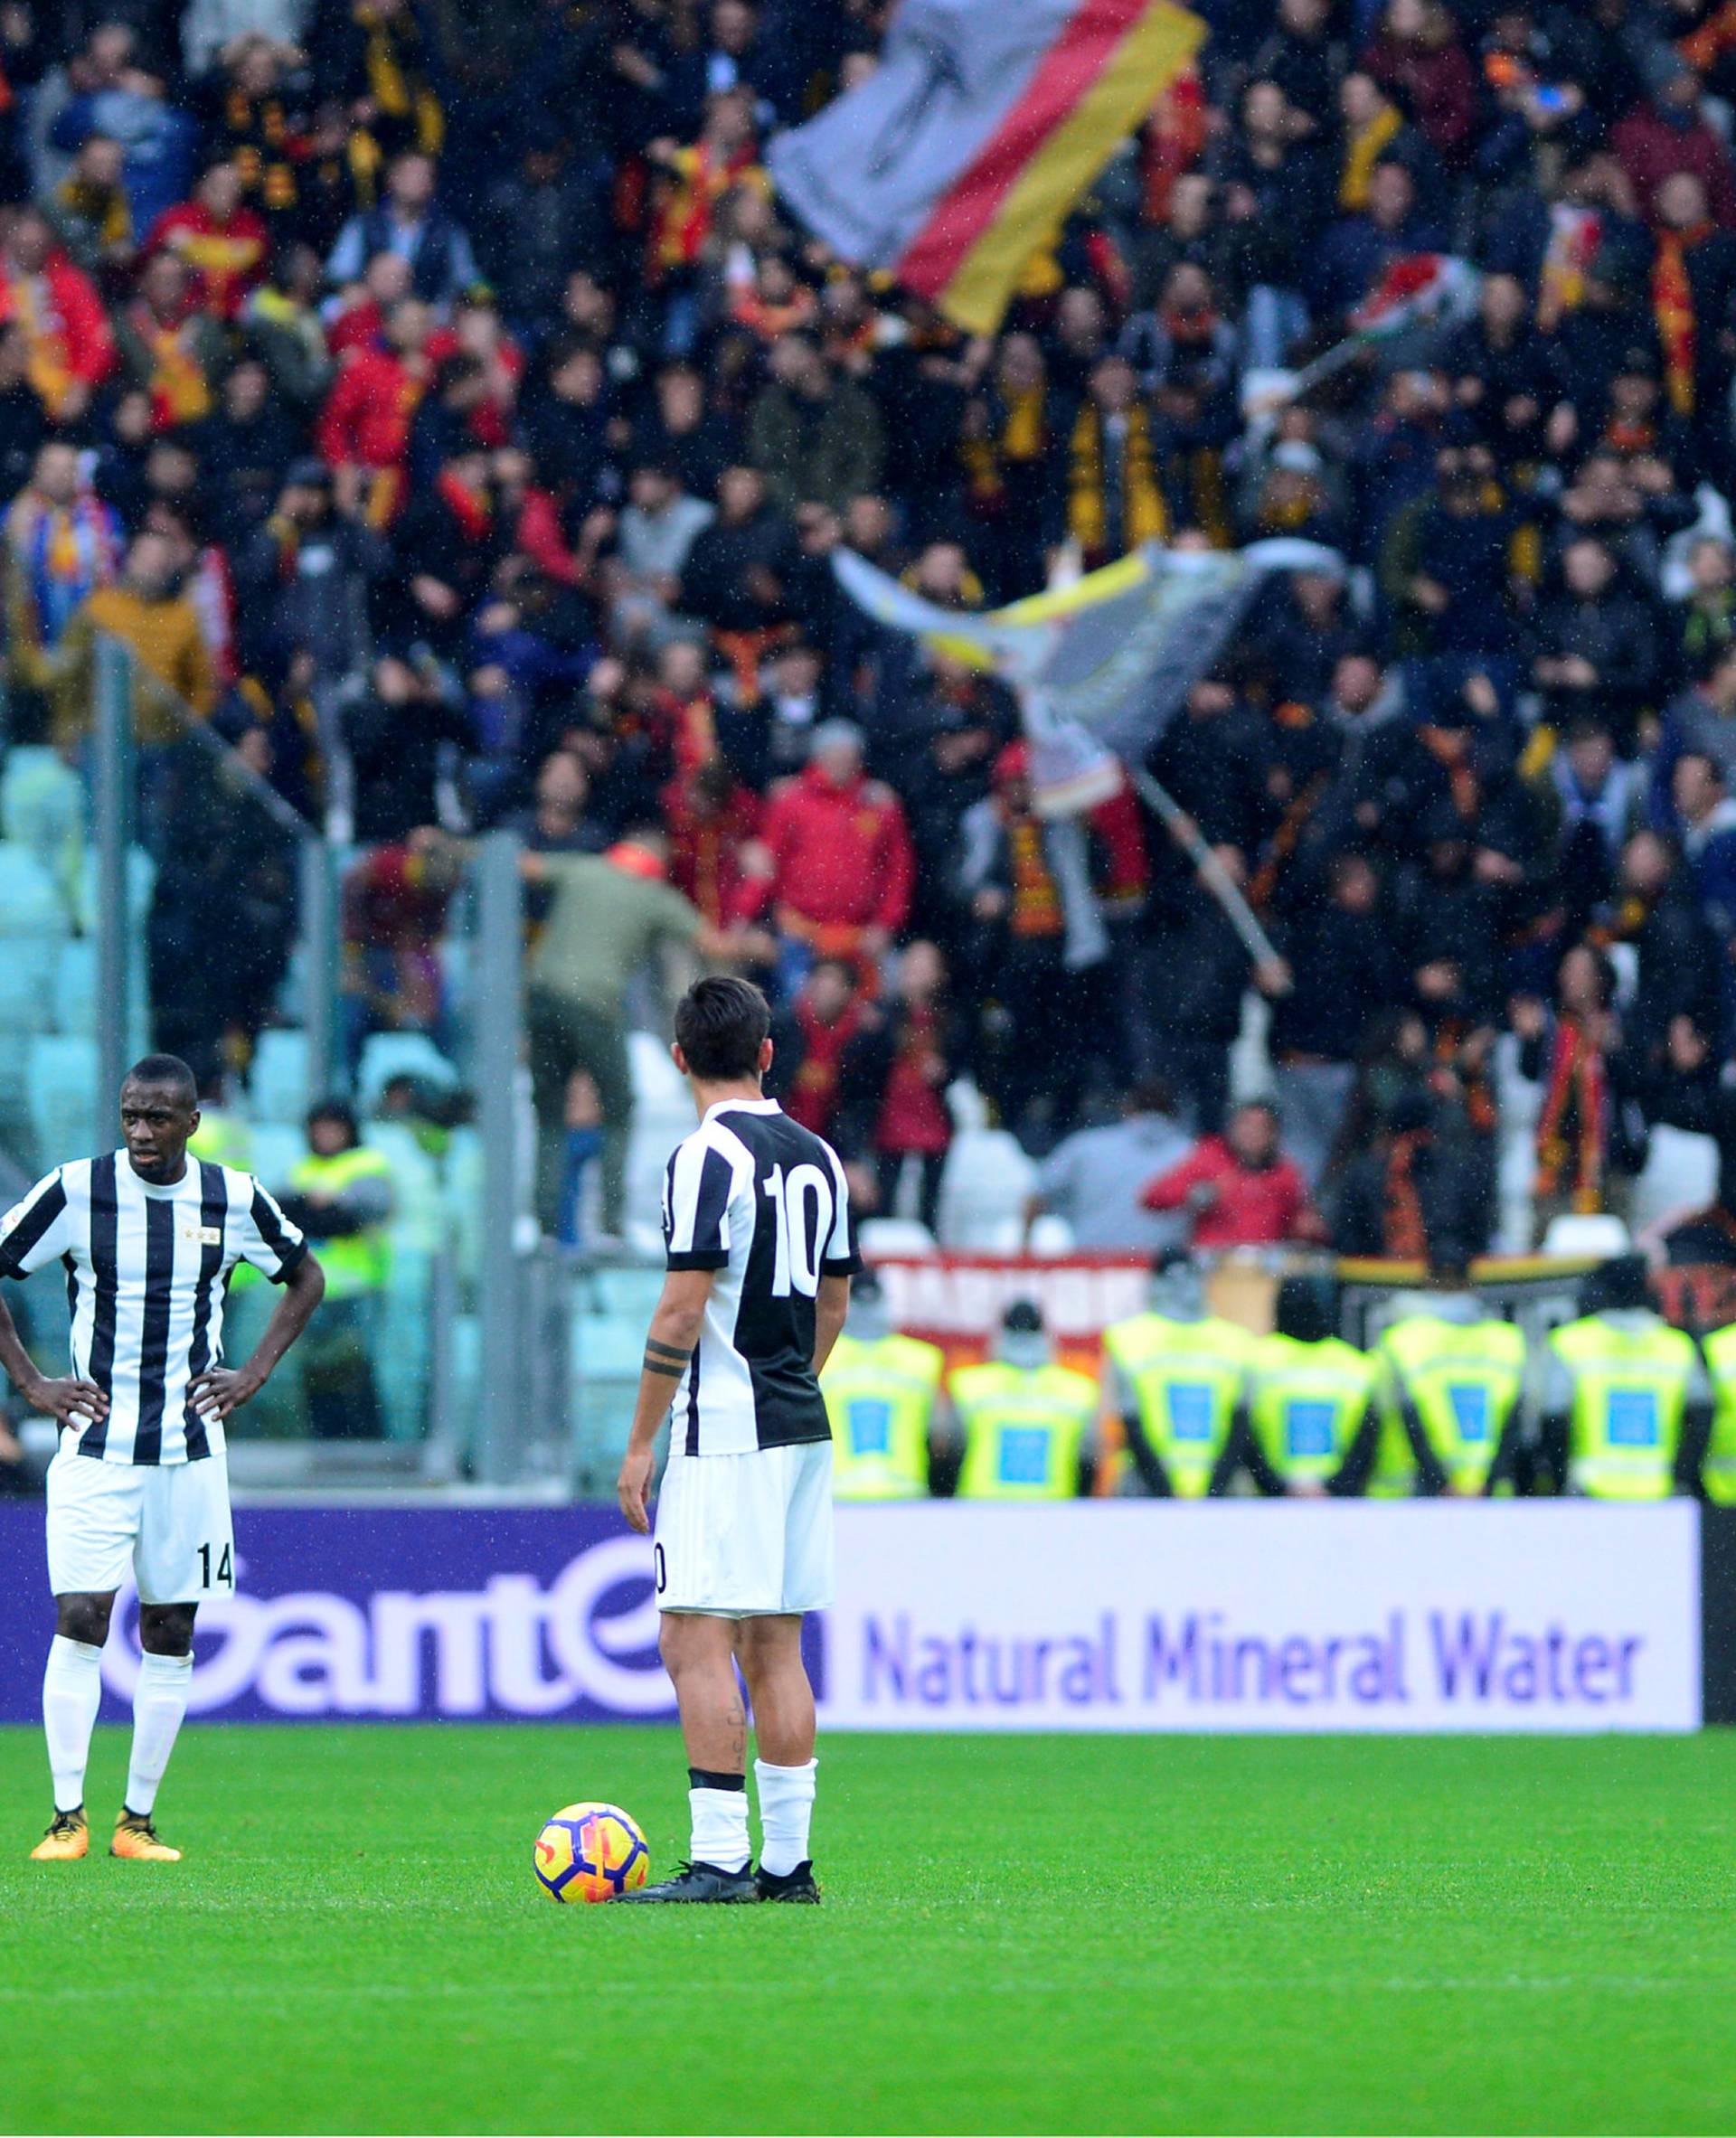 Serie A - Juventus vs Benevento